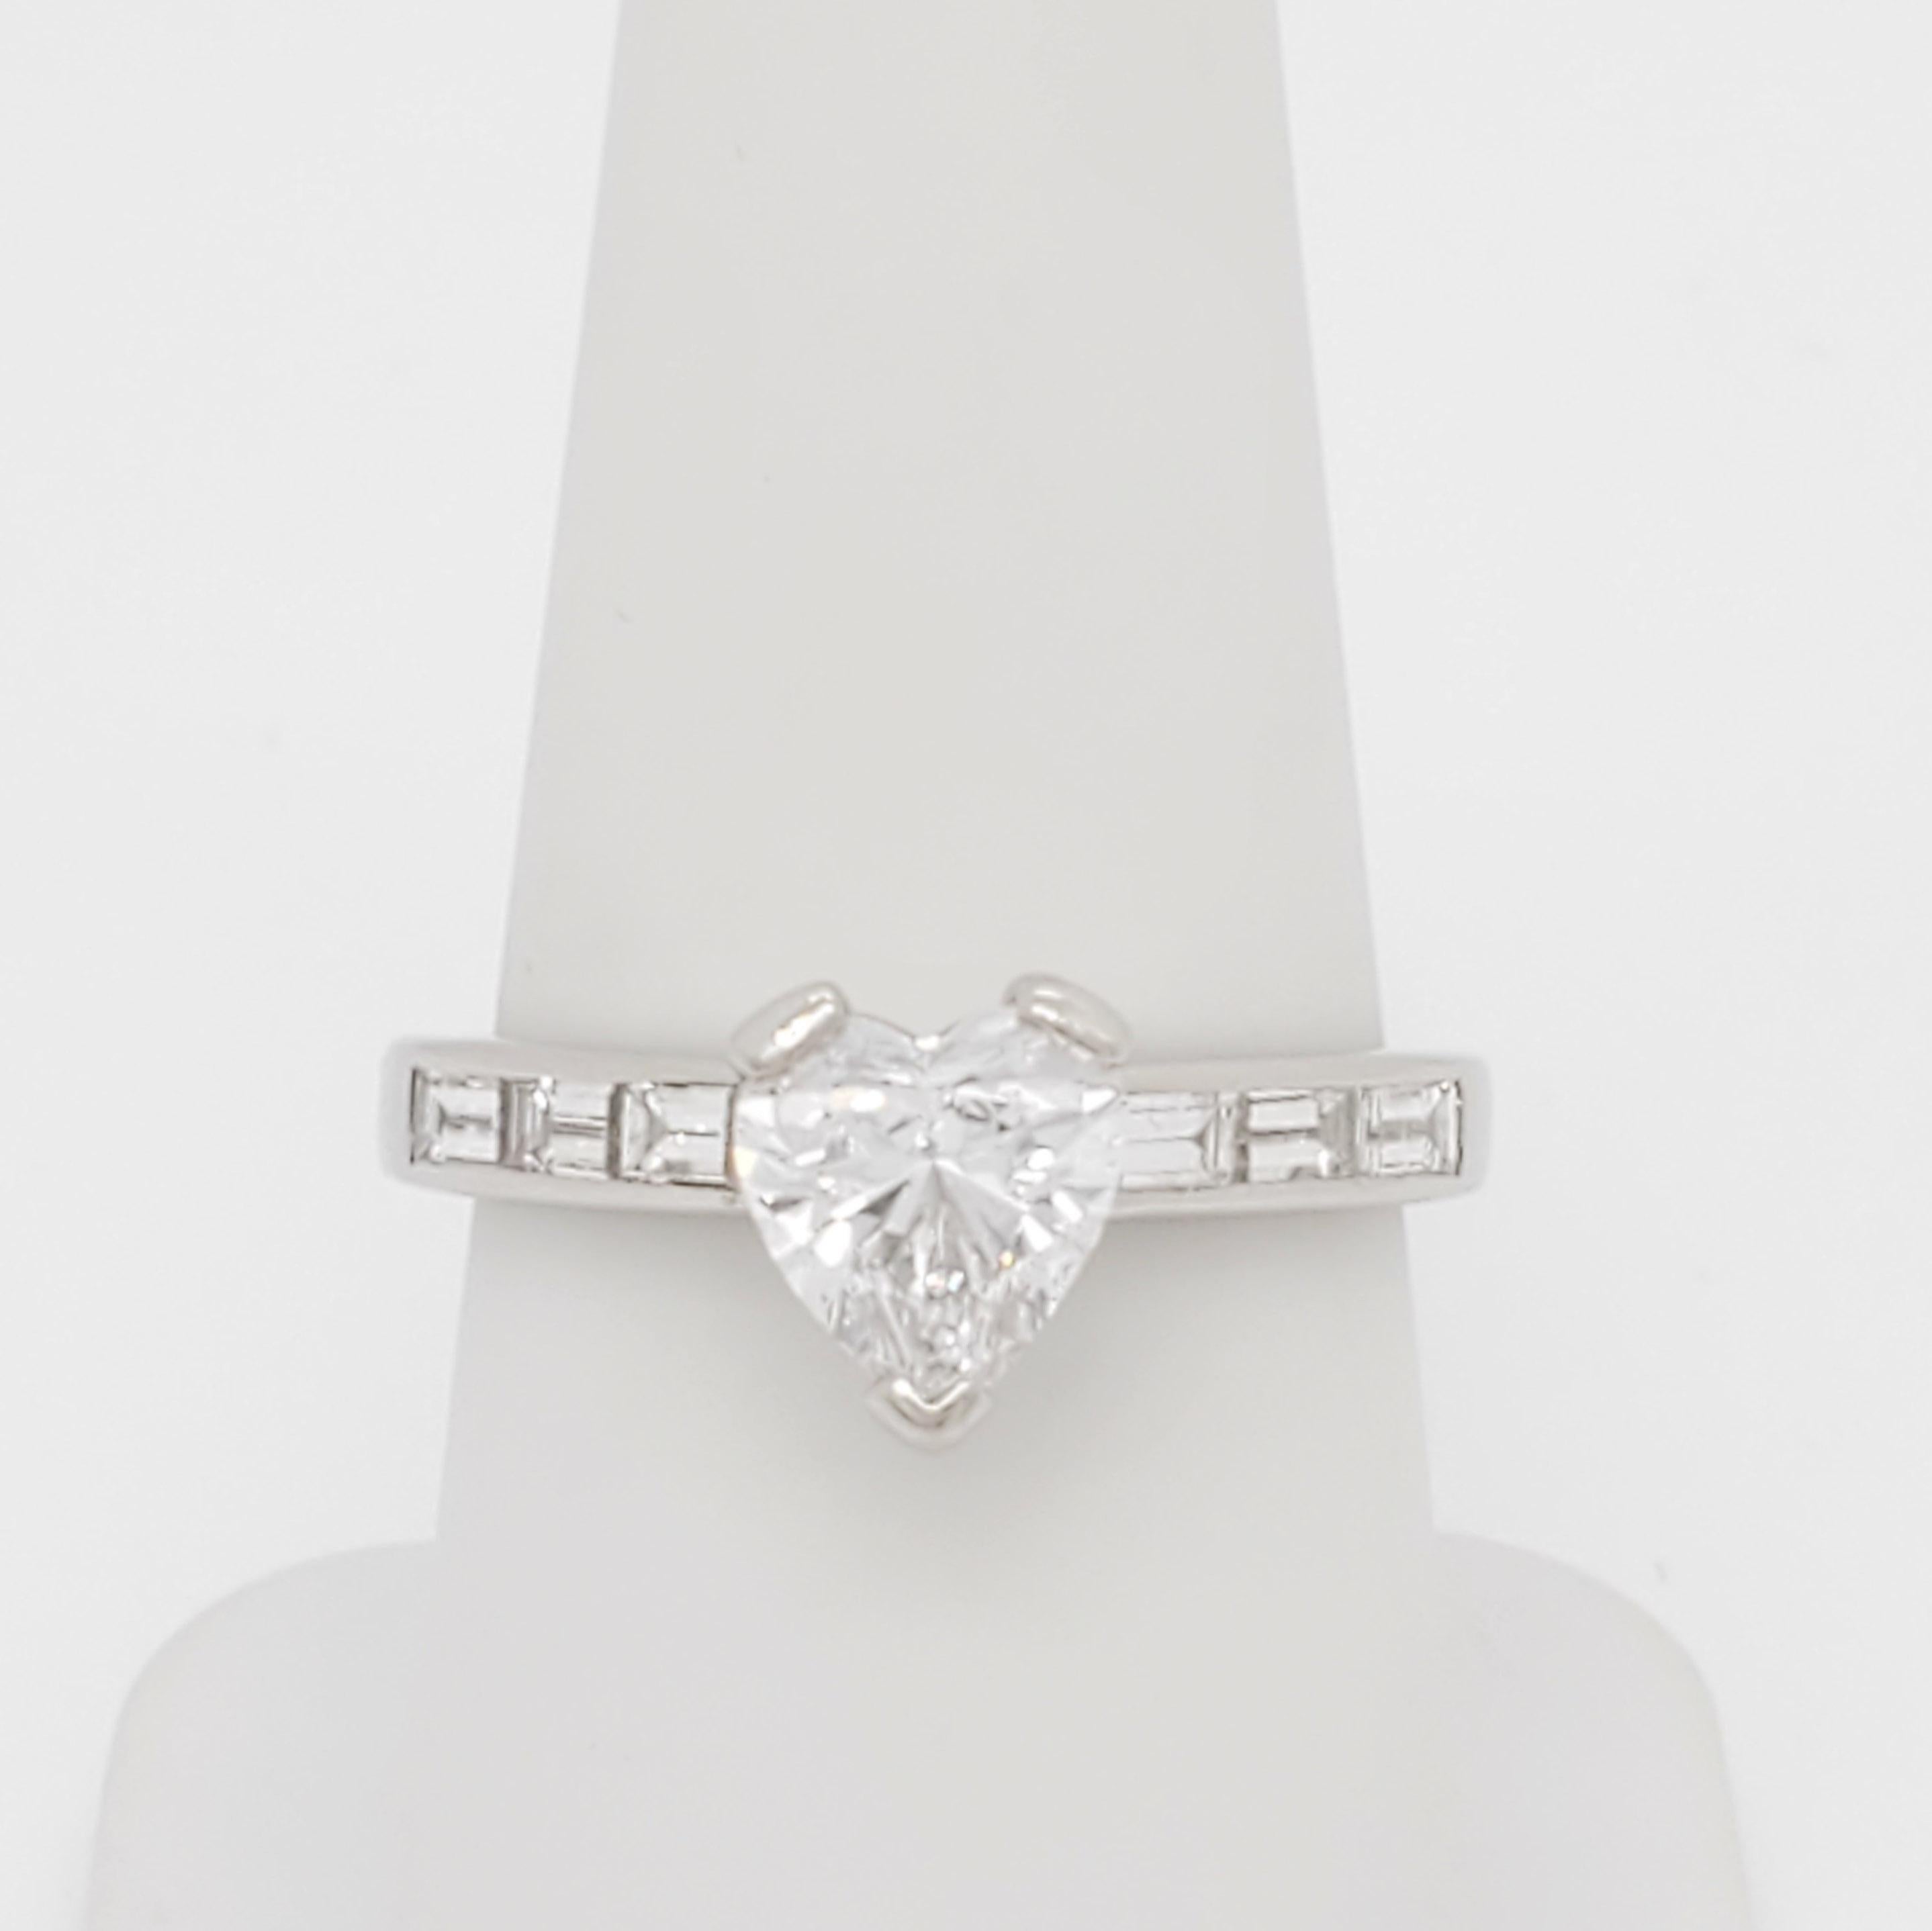 Wunderschöne 1,28 ct. GIA Diamant Herzform, D SI 1.  Der Ring hat 0,60 ct. weiße Diamantbaguetten von guter Qualität und ist handgefertigt aus Platin.  Die Ringgröße ist 7.  Ein GIA-Zertifikat liegt bei.